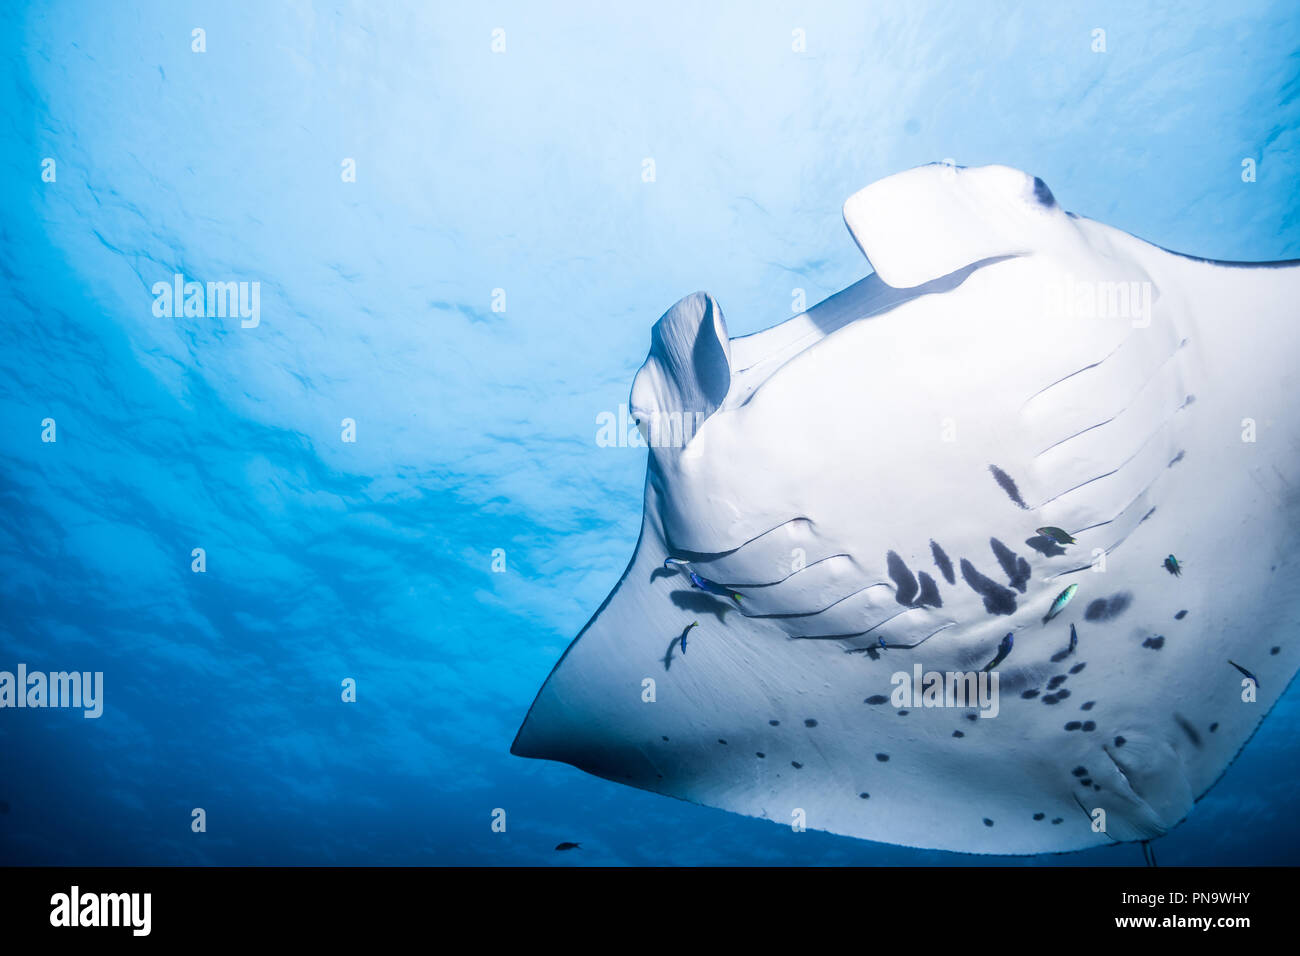 Manta ray. nuotare nell'oceano blu. Isola di Yap Gli Stati Federati di Micronesia Foto Stock